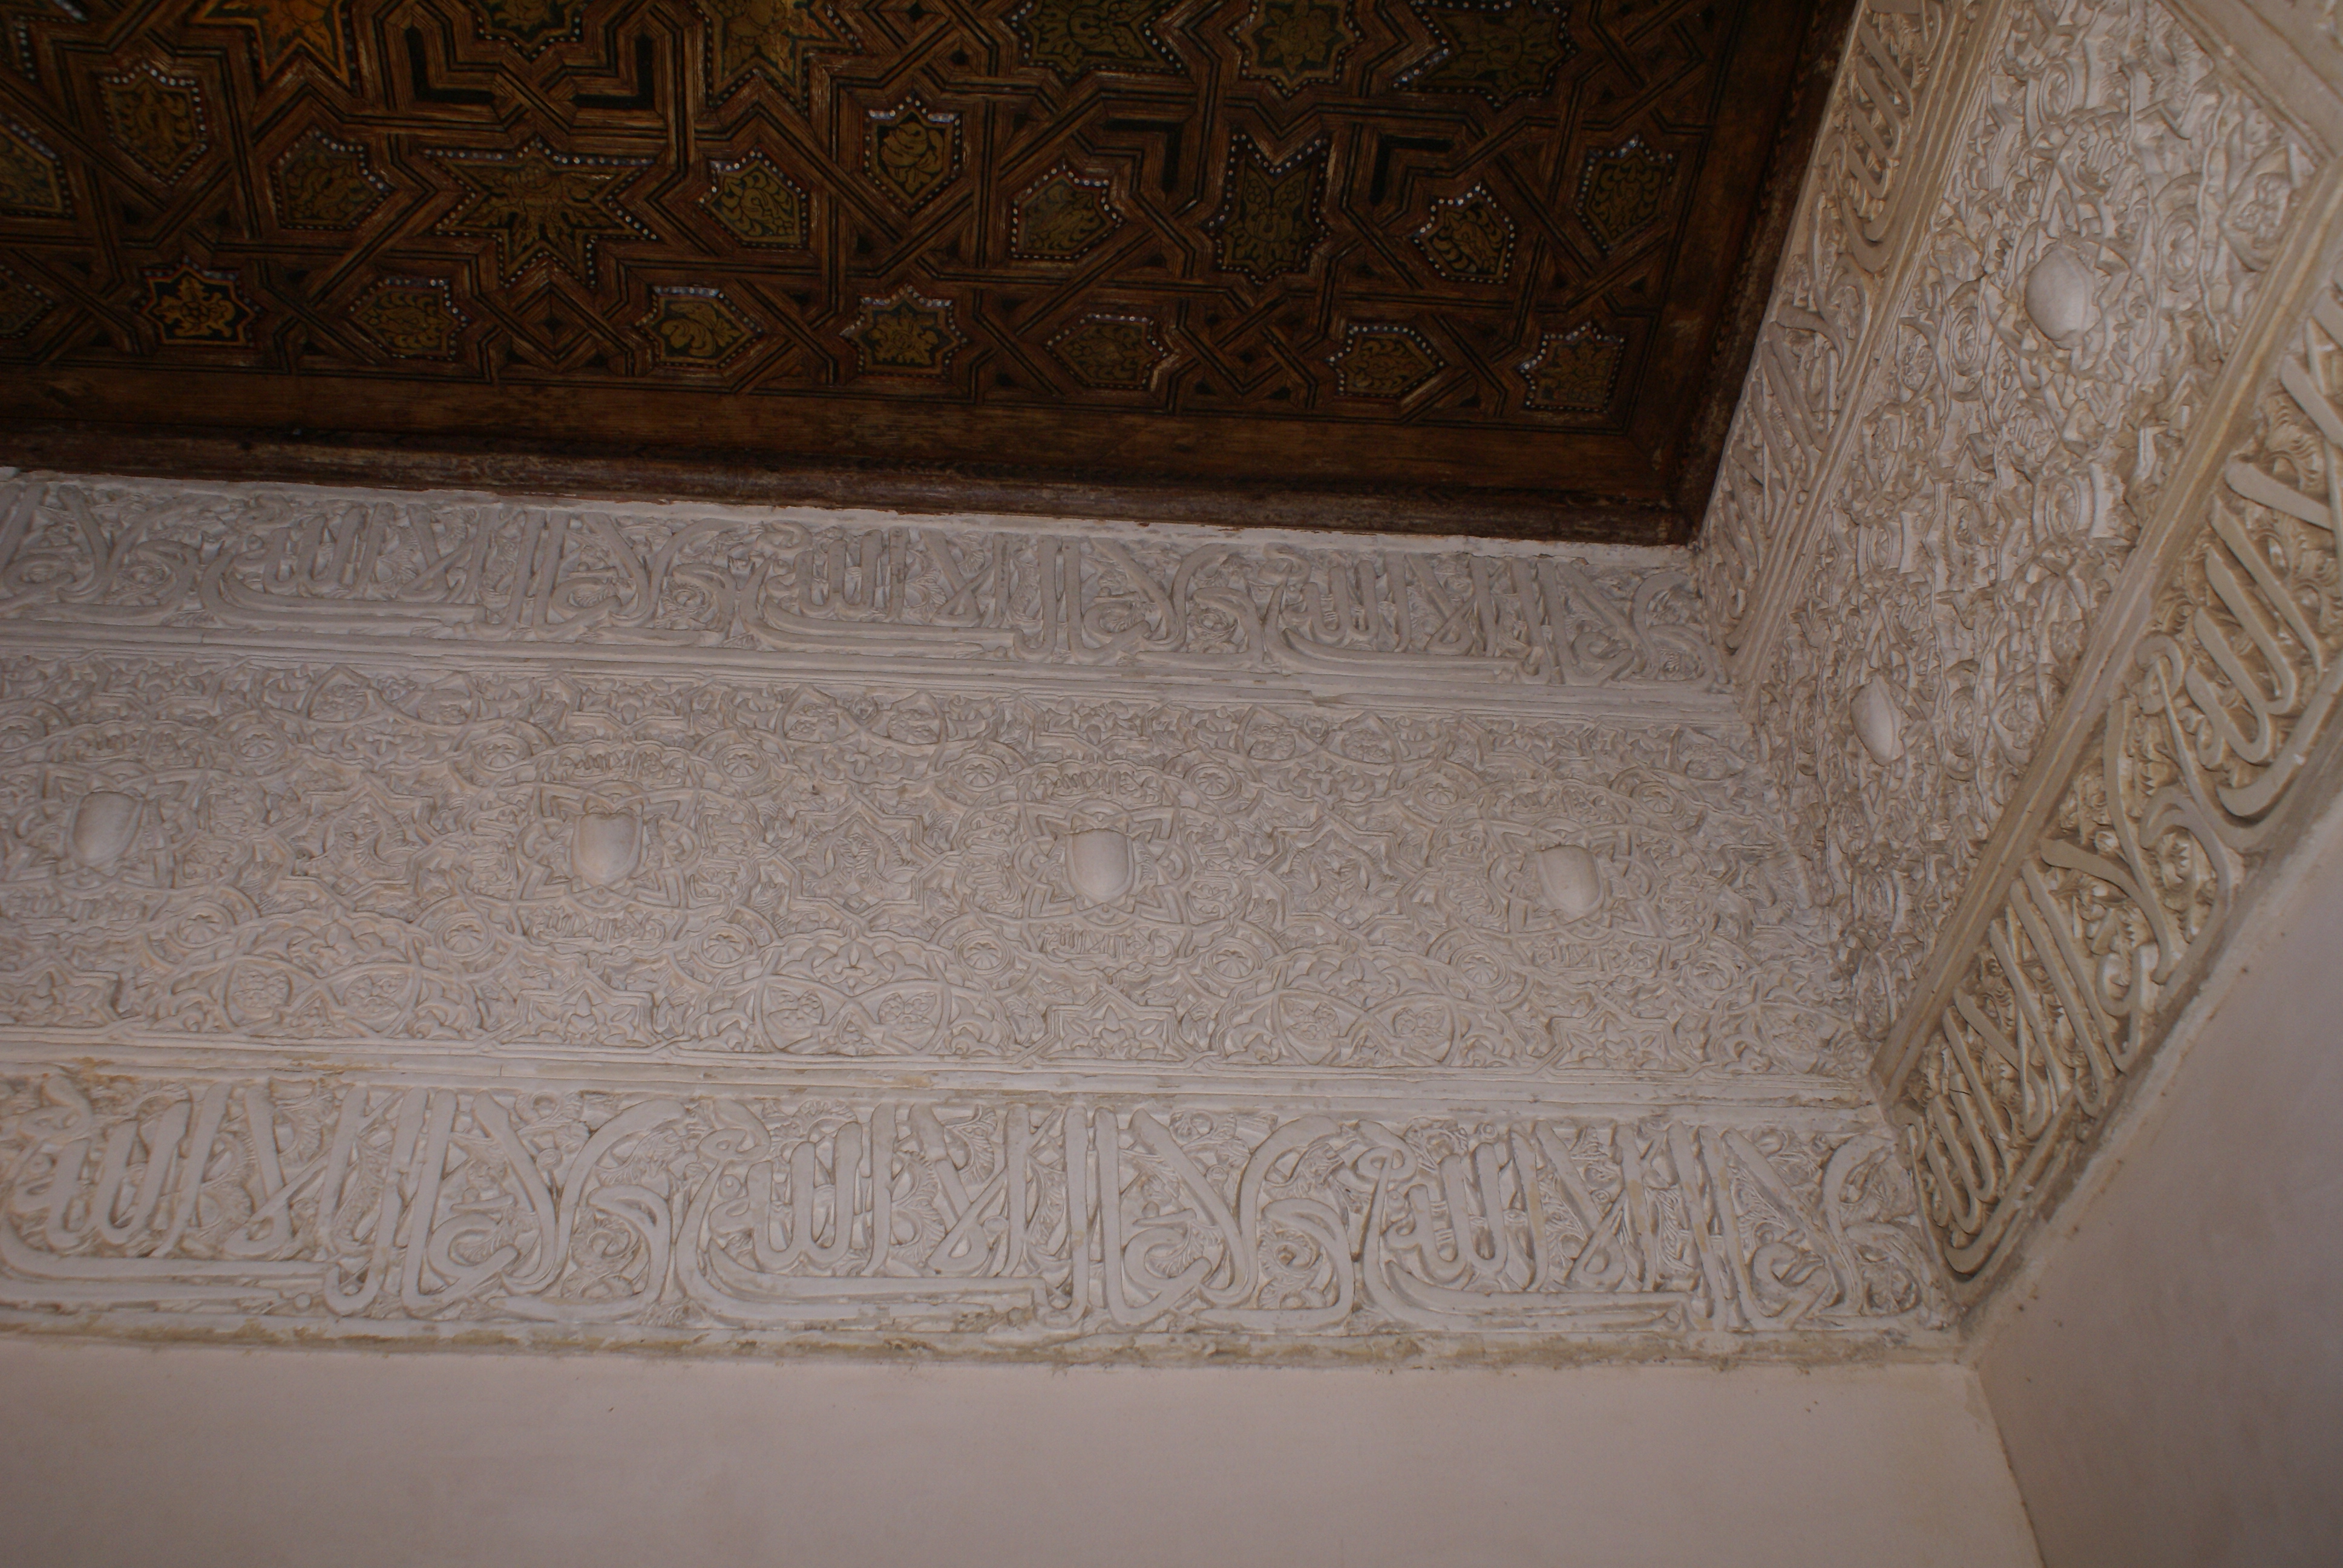 Alhambra vnitřní prostory paláce2 - Alhambra inside of palace2 